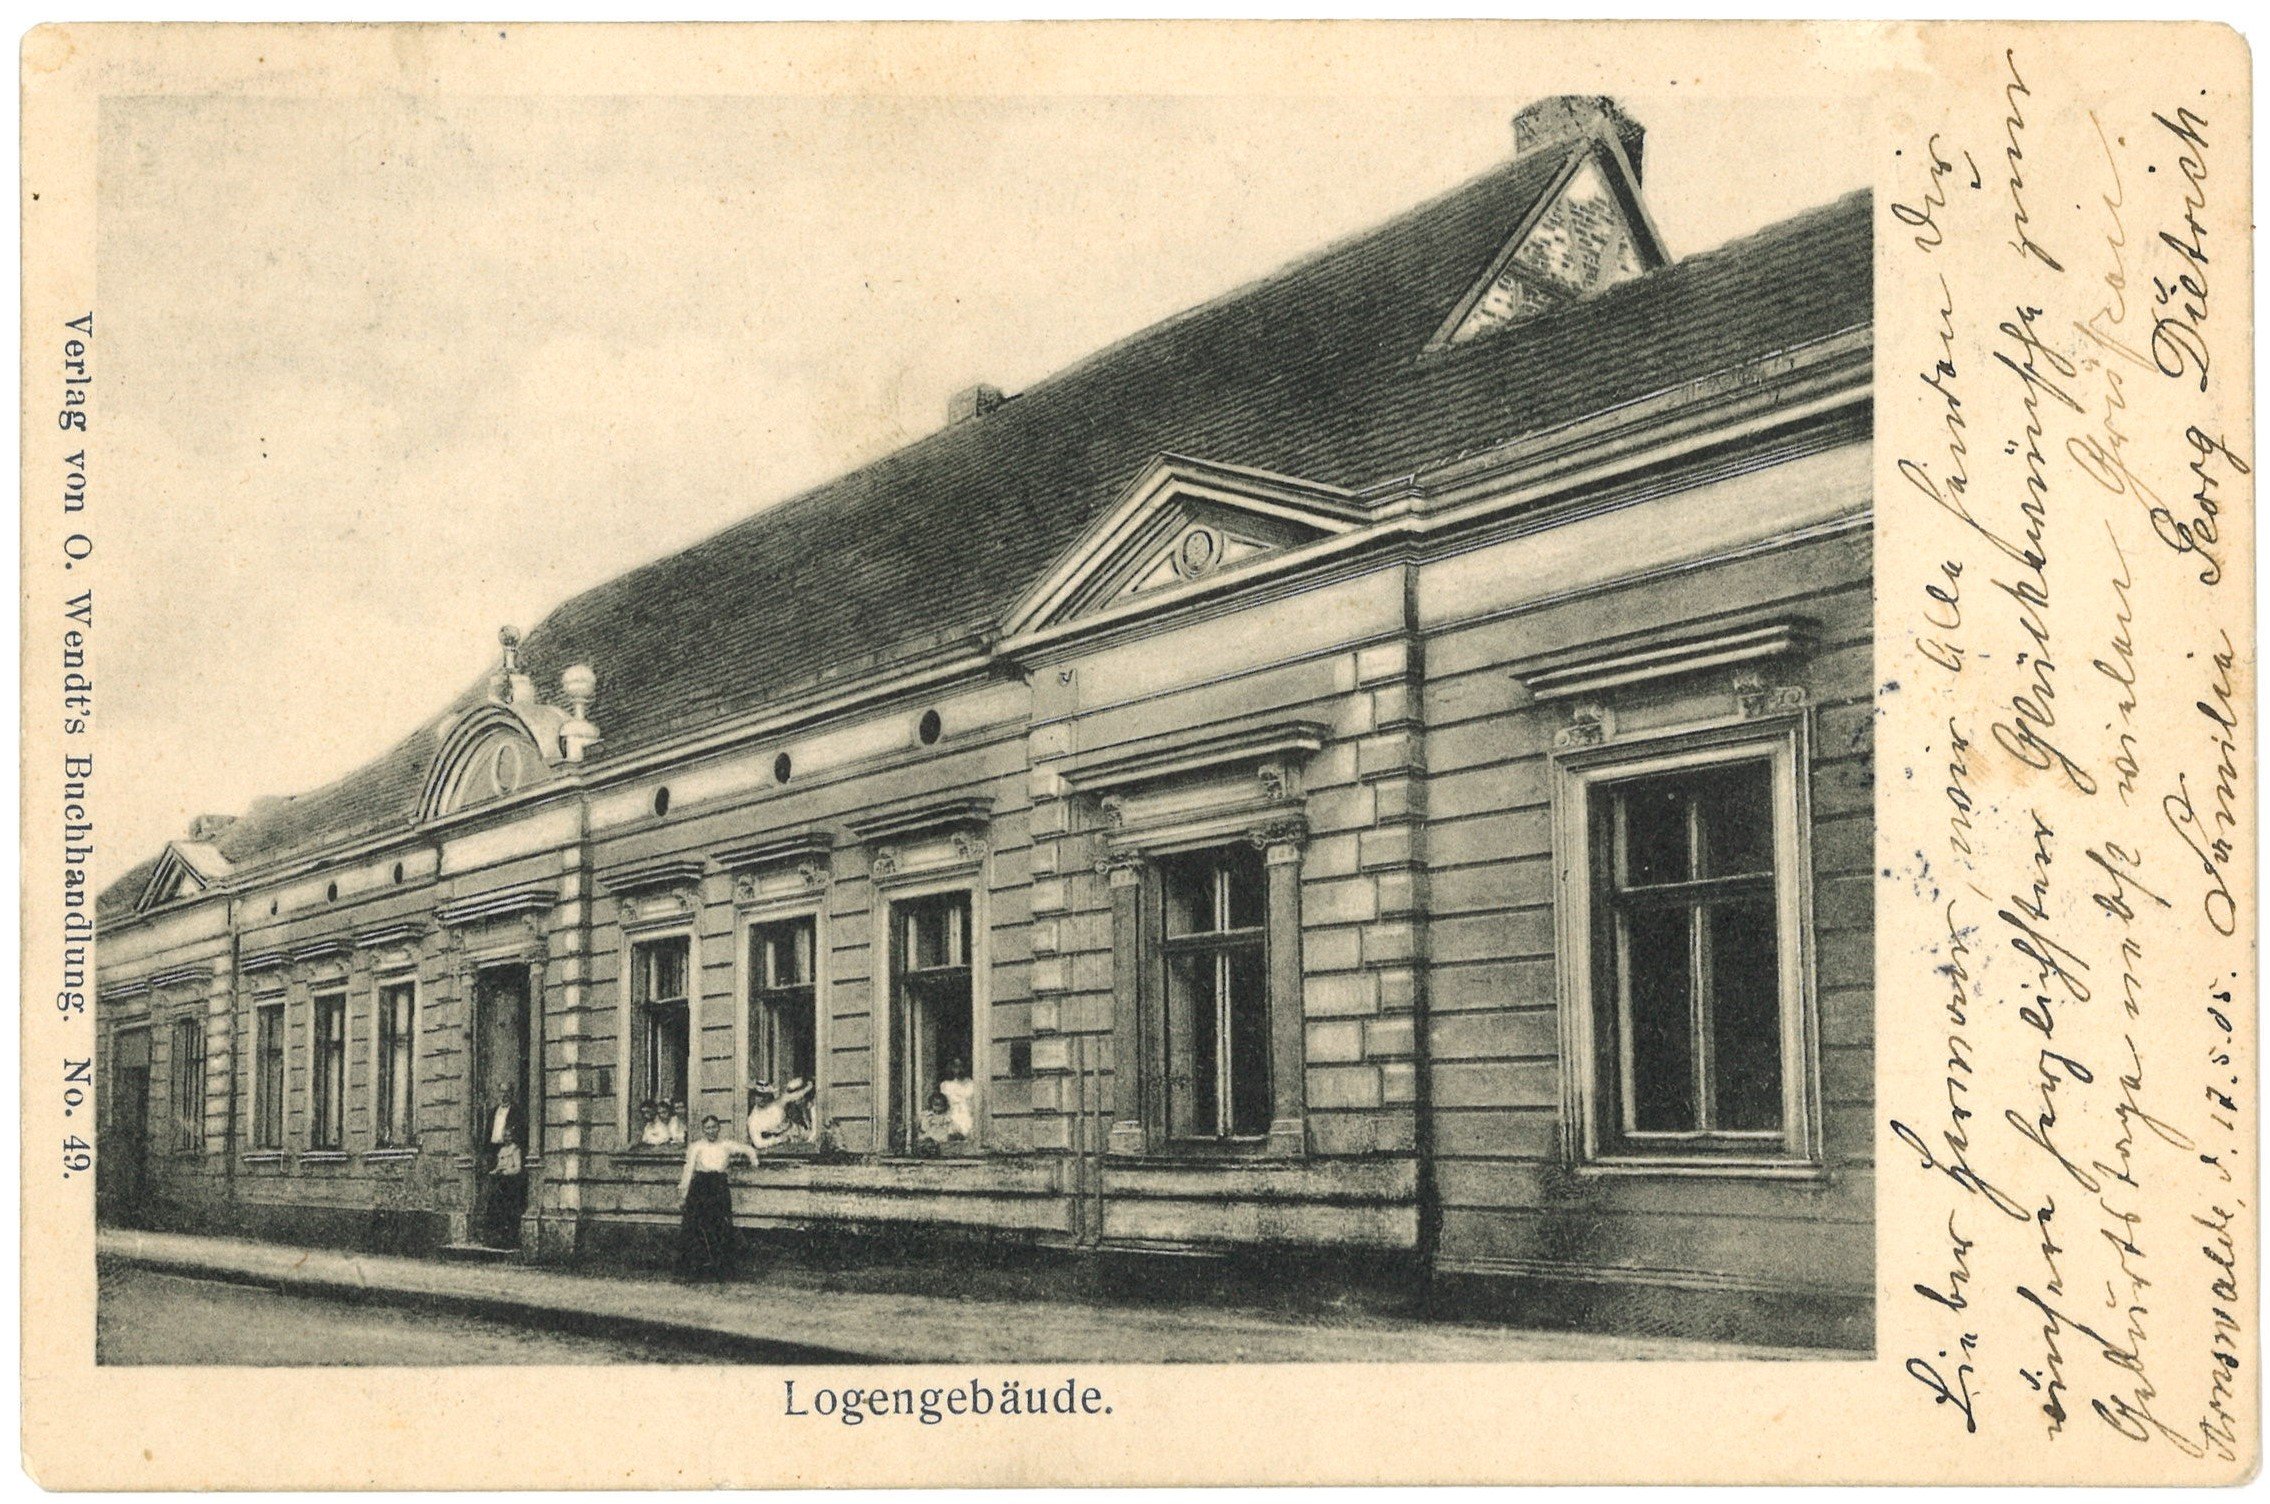 Arnswalde: Logengebäude (Landesgeschichtliche Vereinigung für die Mark Brandenburg e.V. CC BY)